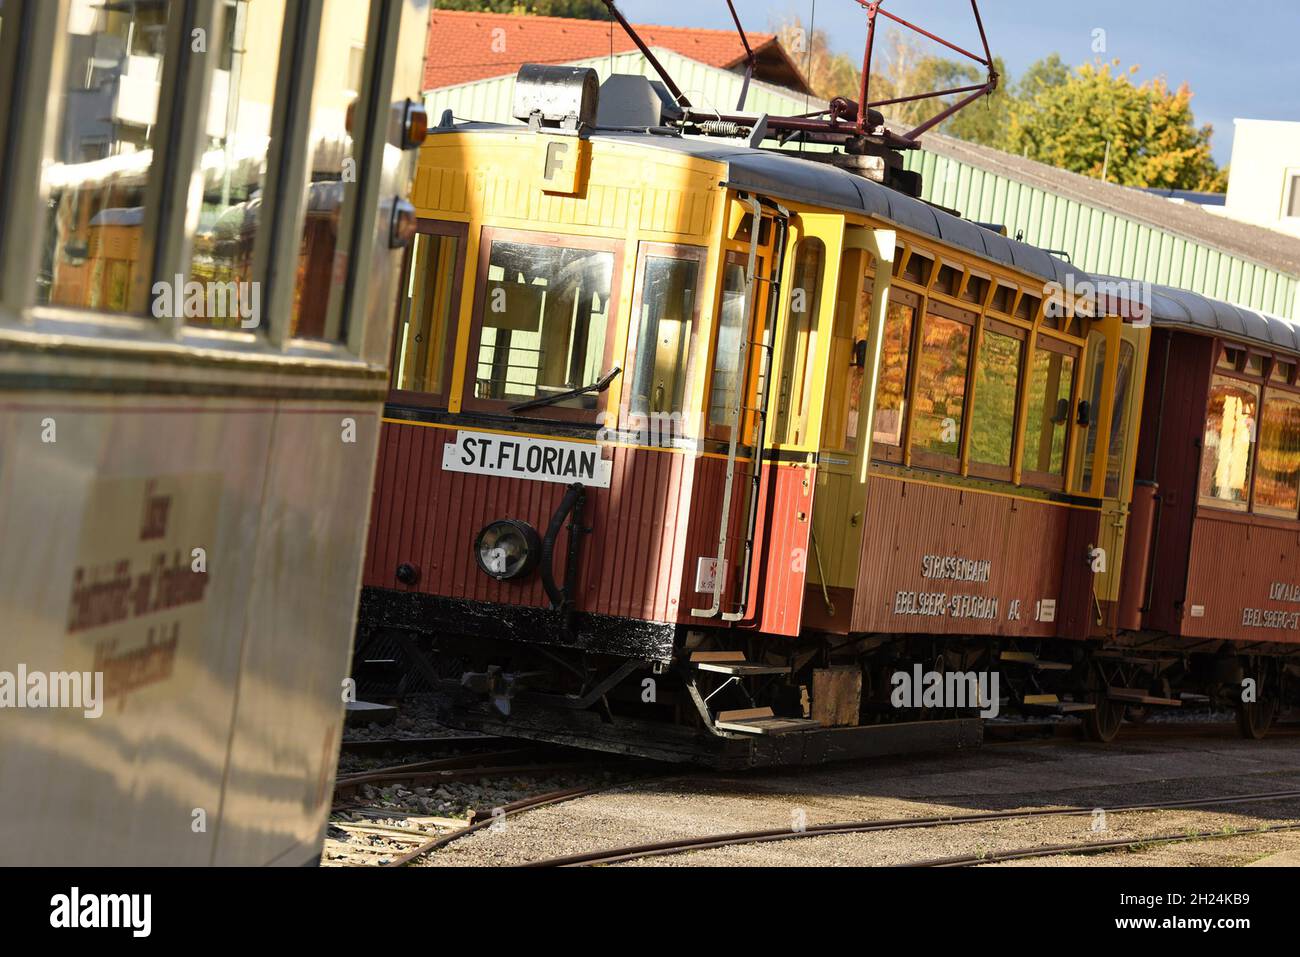 Die frühere, historische Florianerbahn in Sankt Florian, Österreich, Europa - The former, historic Florian railway in Sankt Florian, Austria, Europe Stock Photo